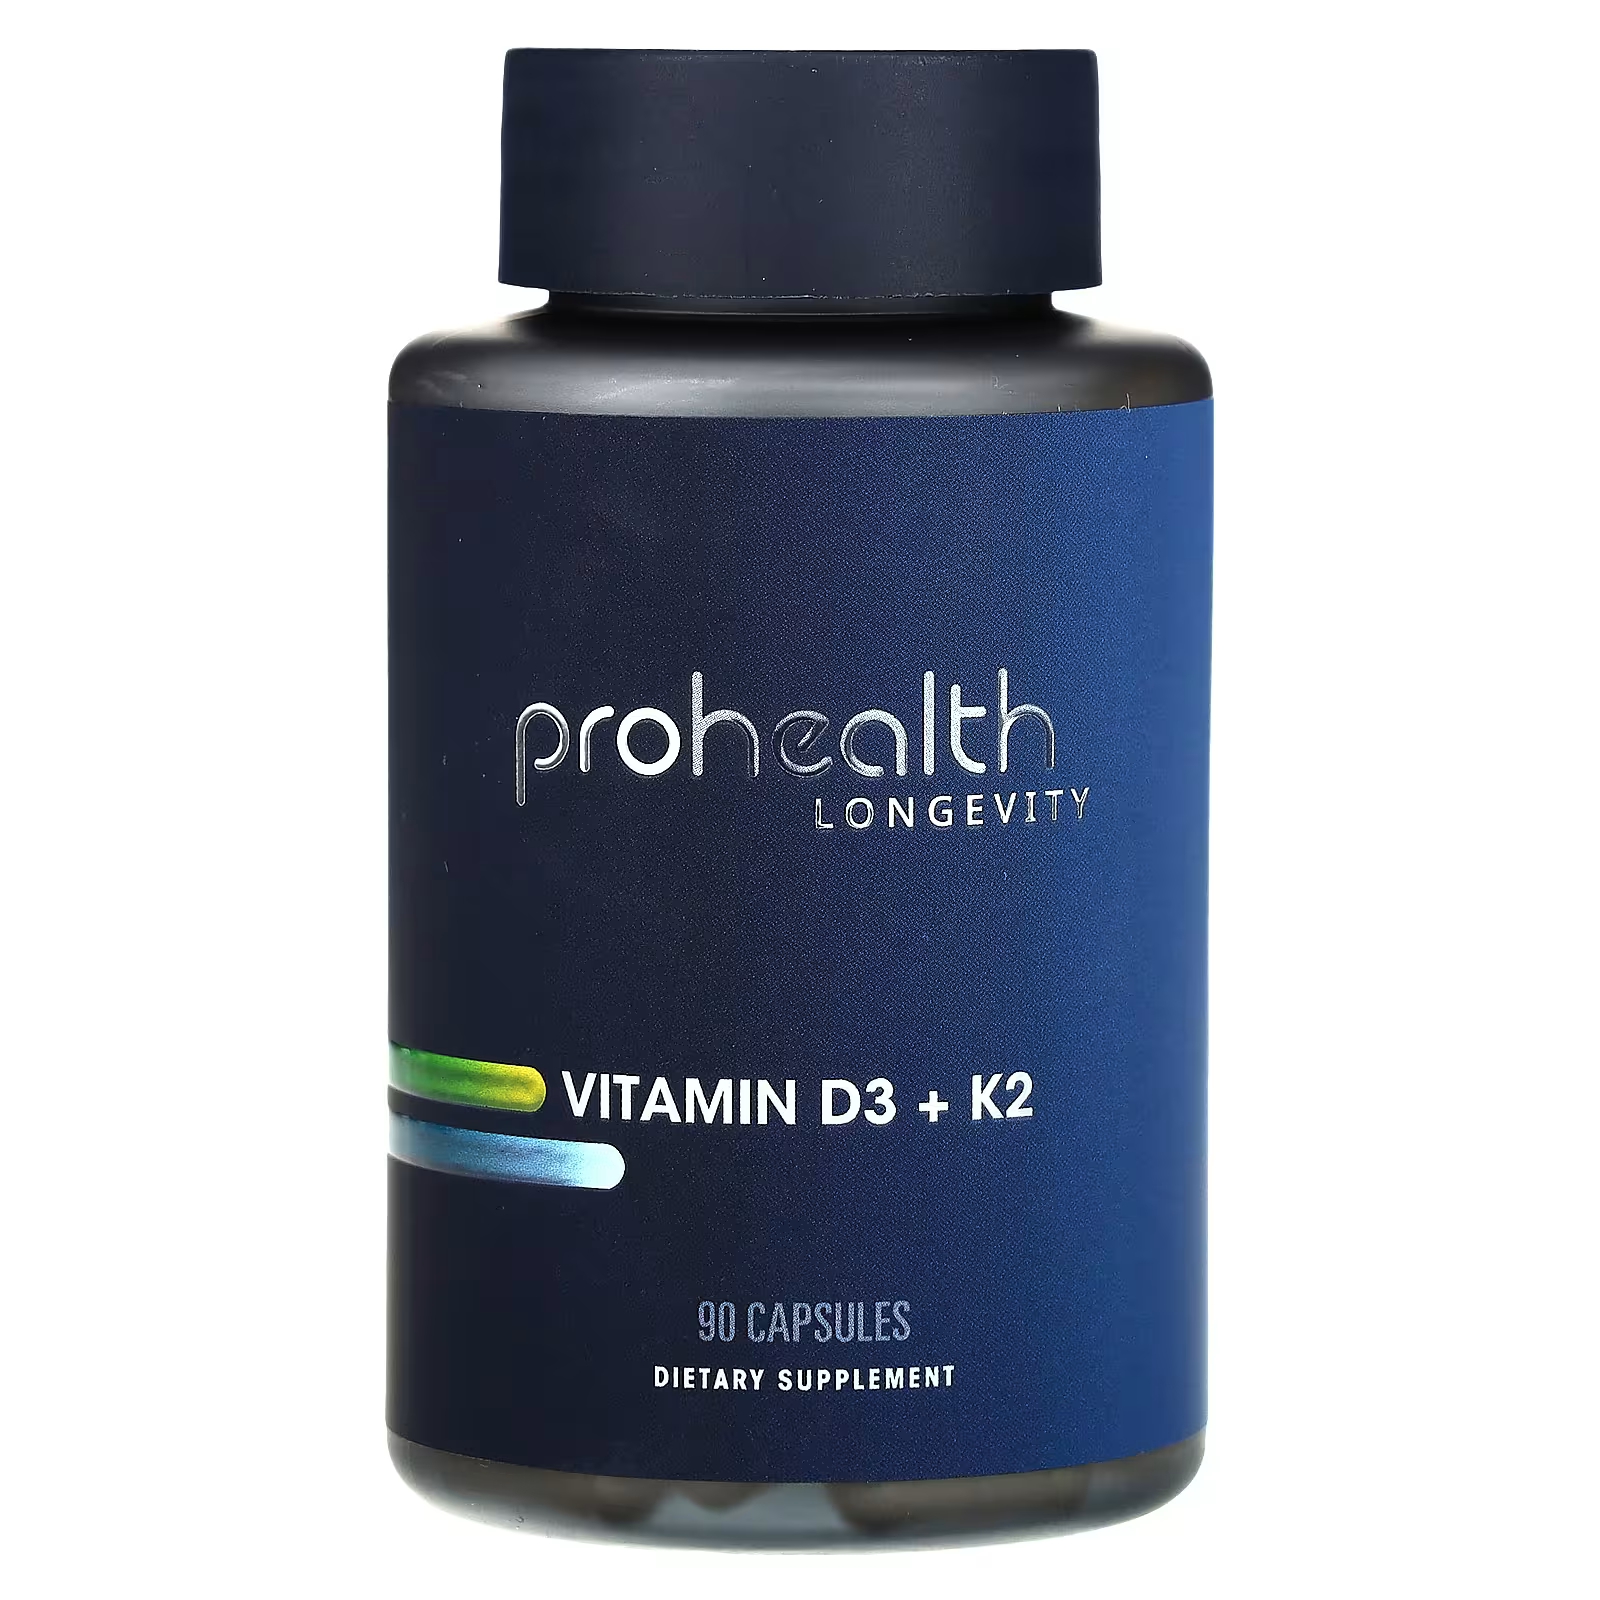 Витамин D3 + K2 ProHealth Longevity, 90 капсул solgar витамин d3 для костей и зубов 600 me 60 капсул solgar витамины